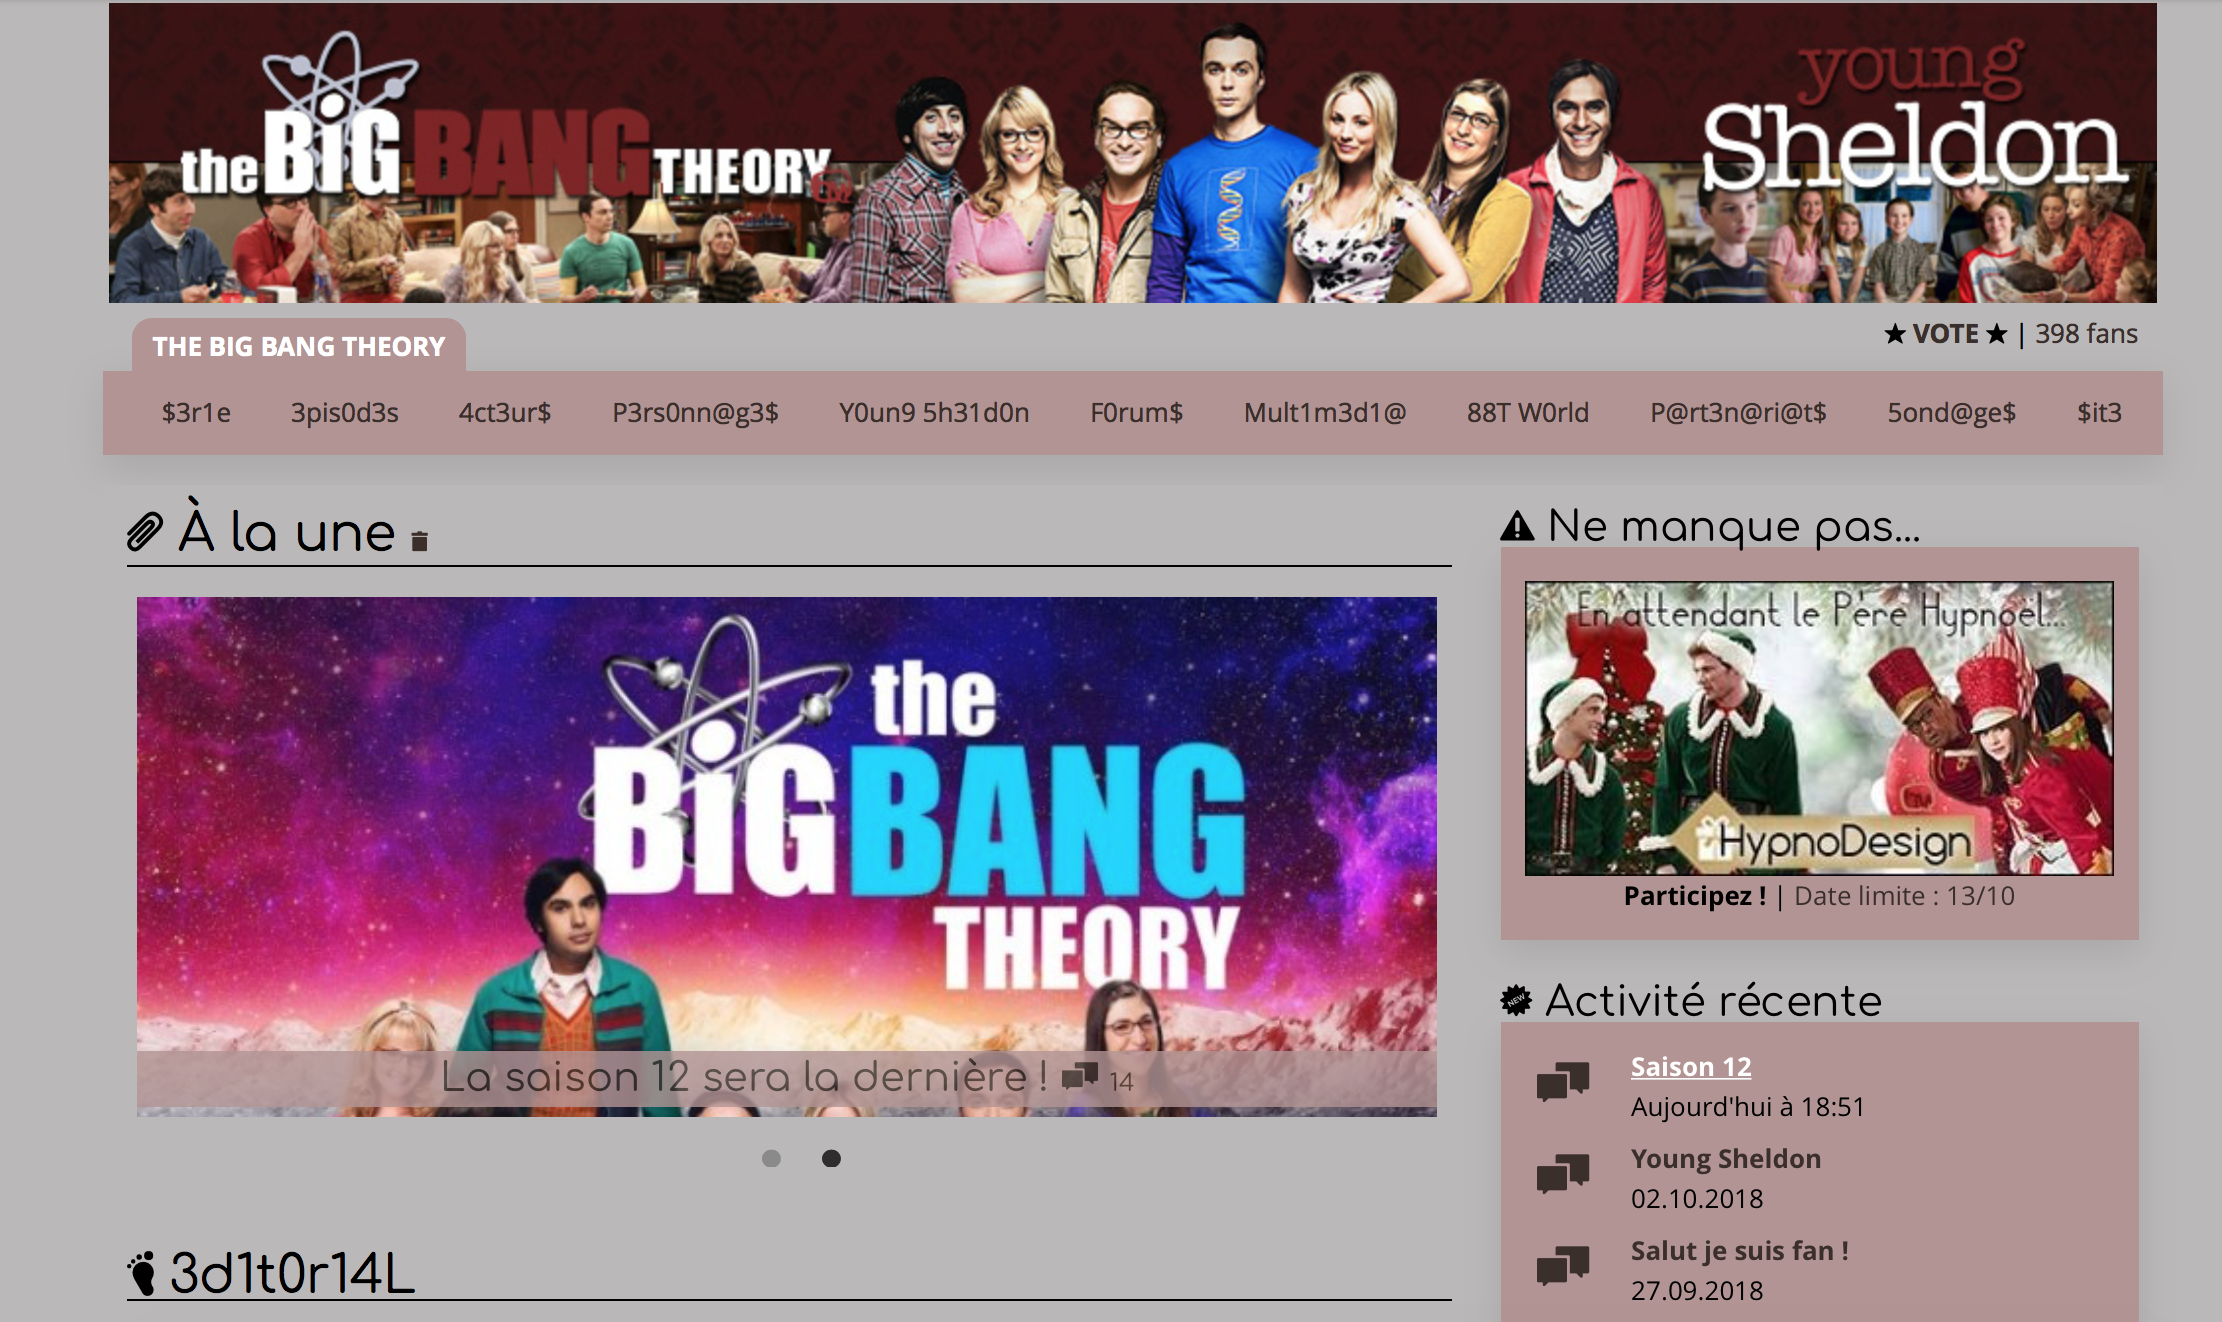 Design du quartier The Big Bang Theory